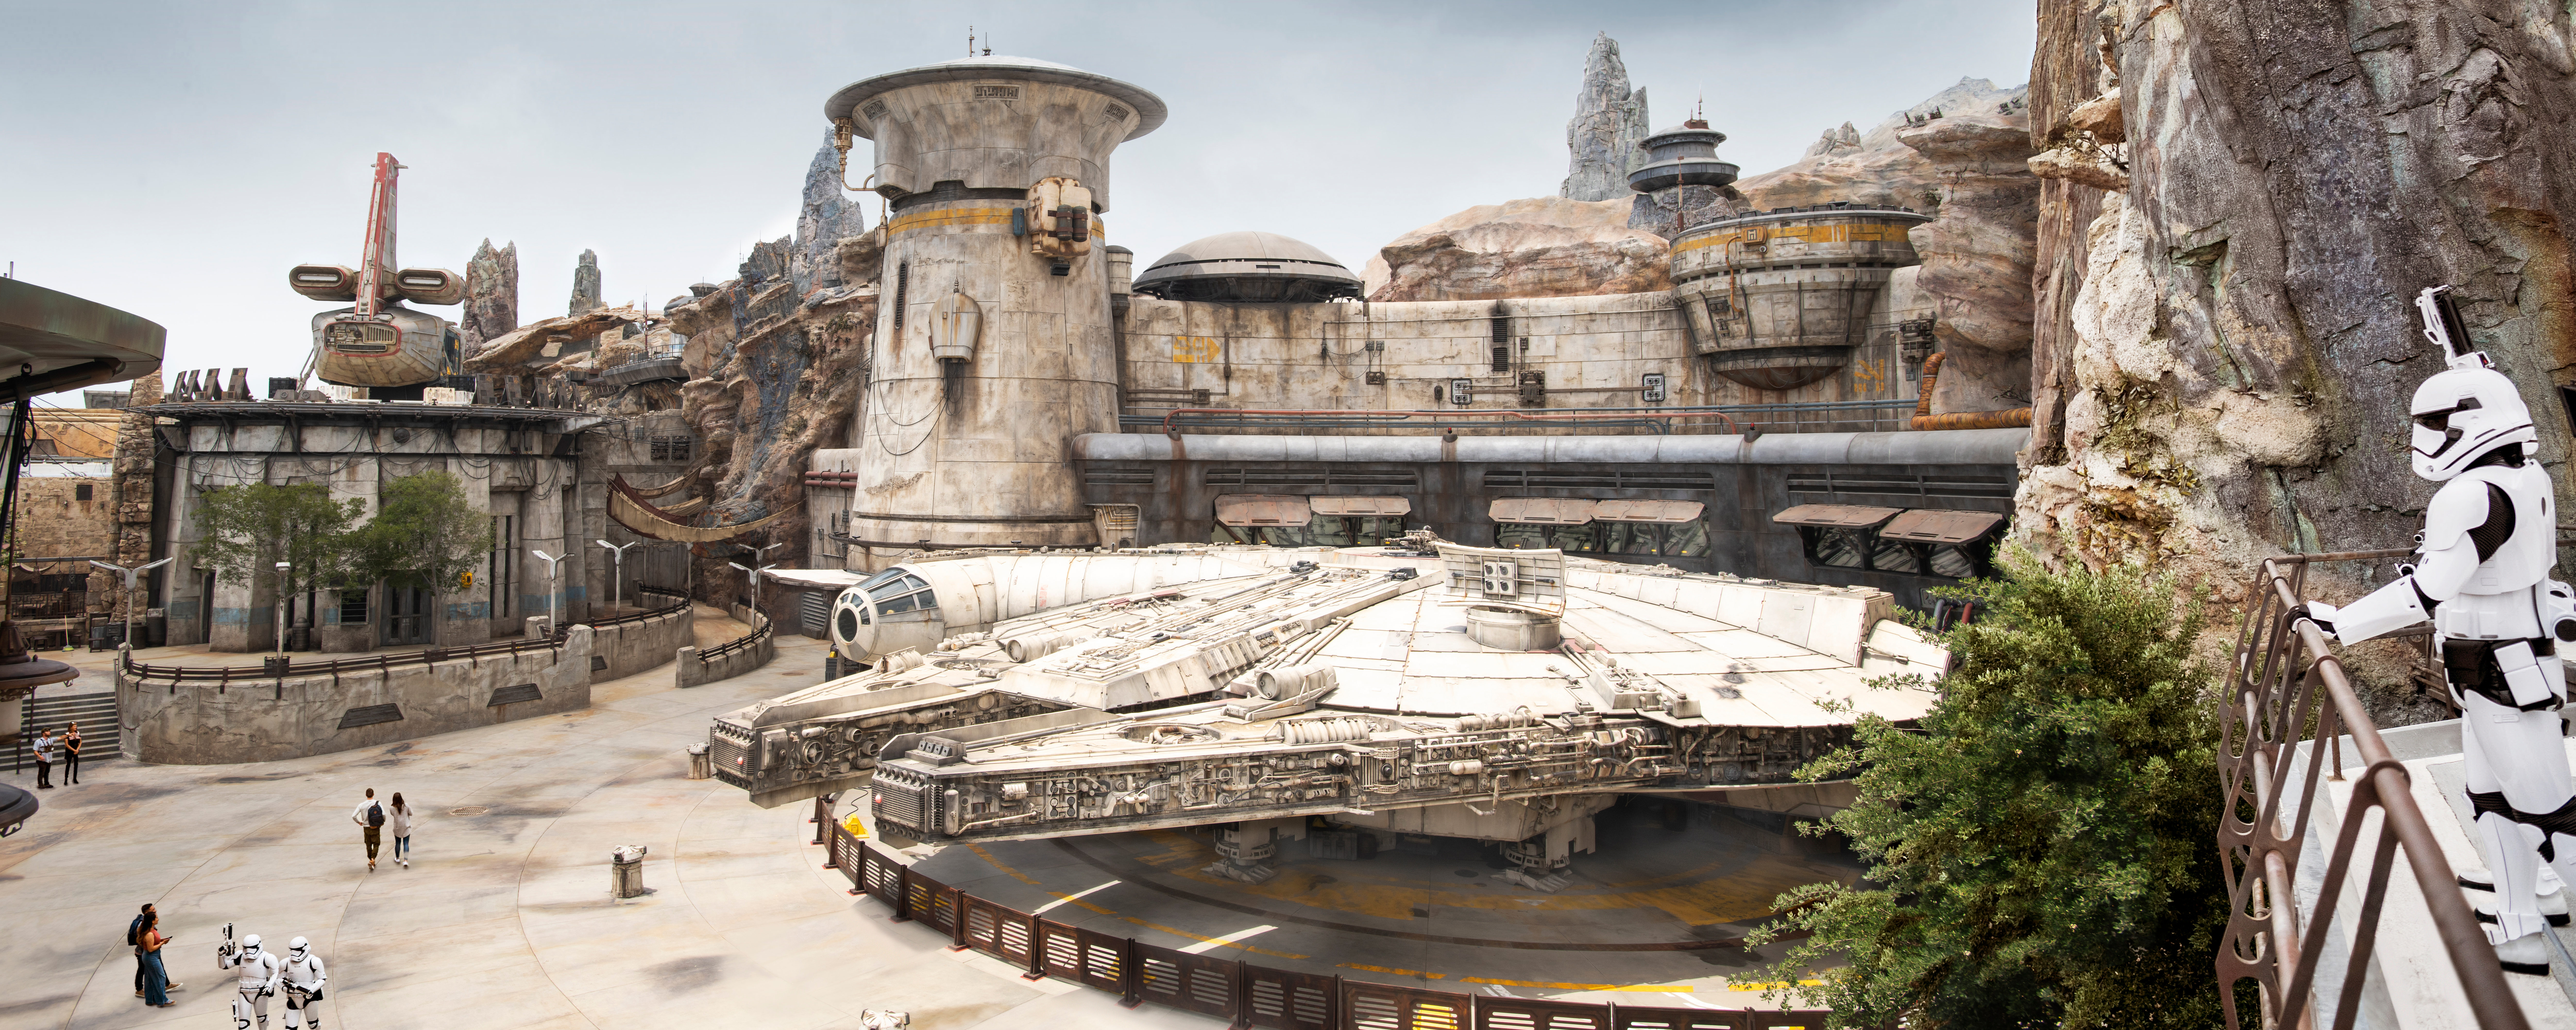 Un stormtrooper de la Primera Orden observa el Halcón Milenario atracado bajo los exóticos edificios de Star Wars y capiteles de madera petrificada